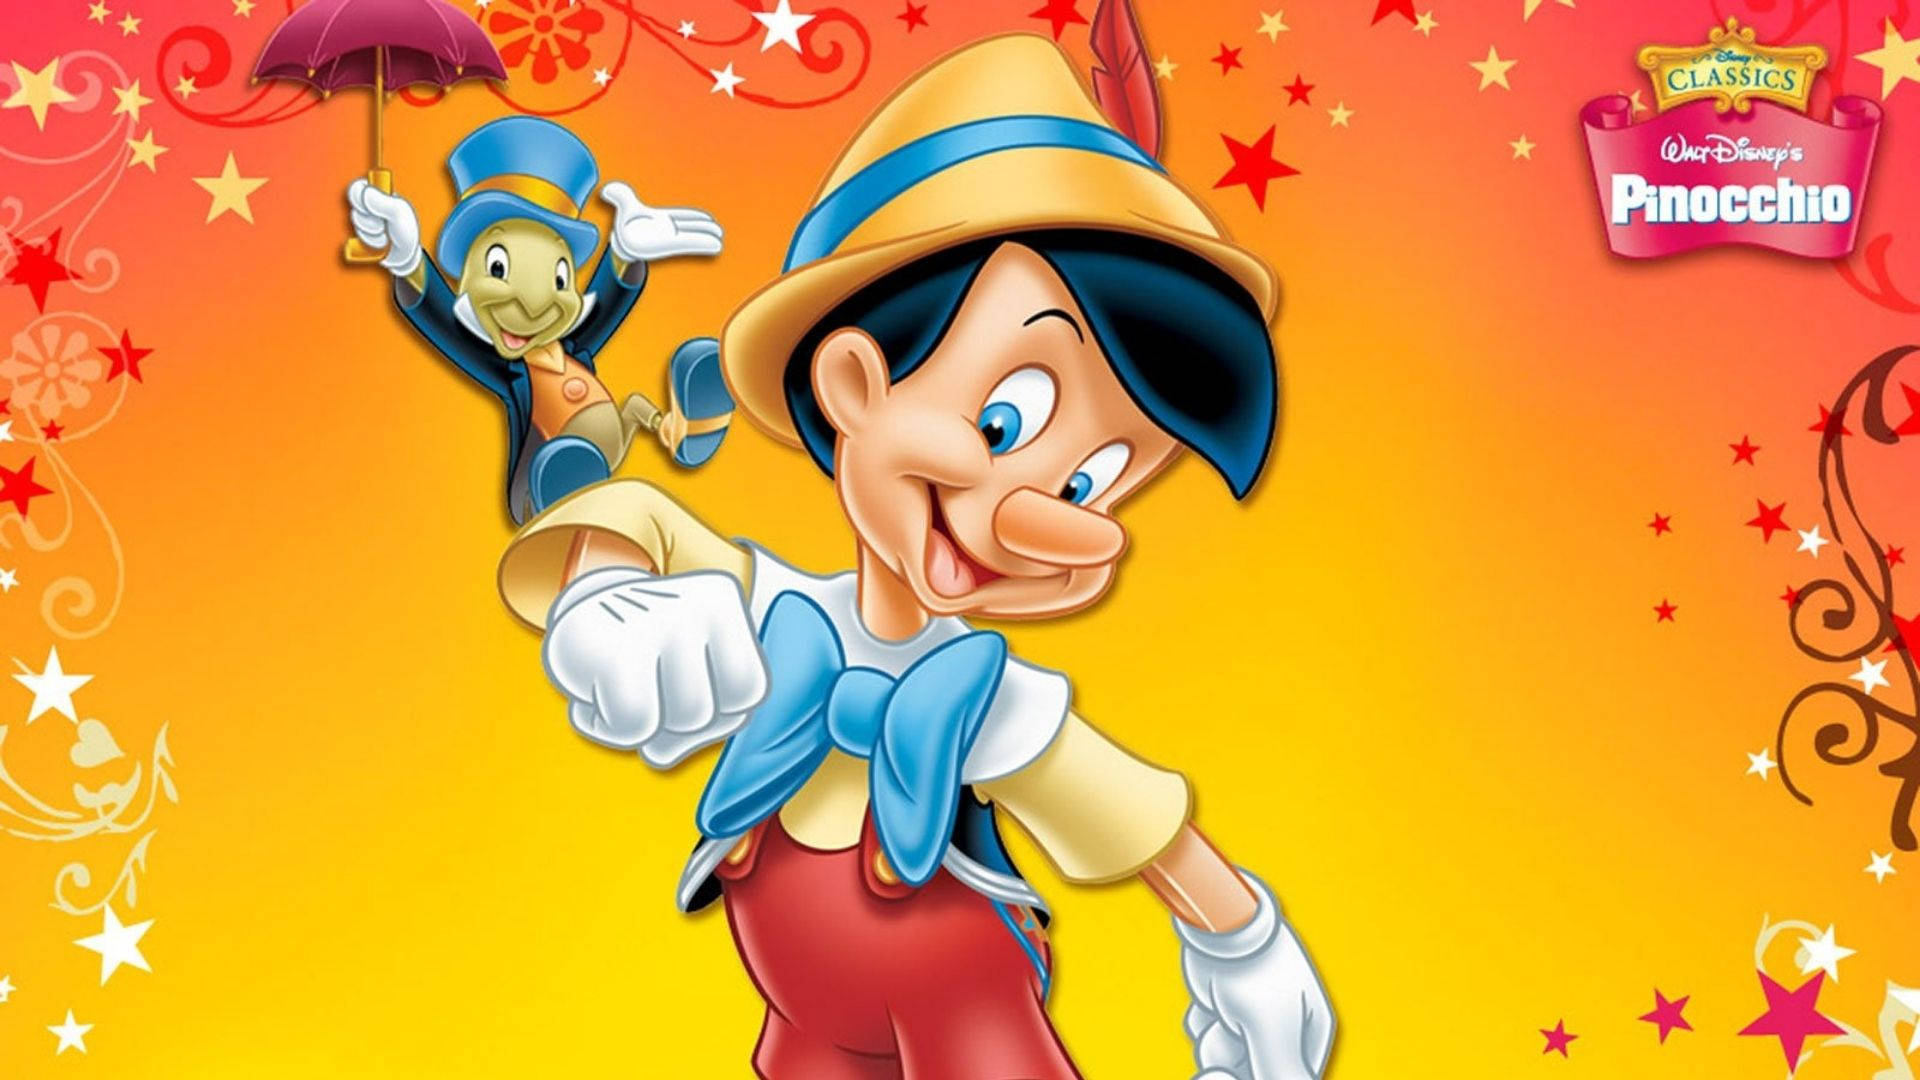 Cricketis A Popular Choice For Computer Or Mobile Wallpaper Among Disney Fans. In Swedish, It Would Be: Pinocchio Med Jiminy Cricket Är Ett Populärt Val Som Dator- Eller Mobilbakgrund Bland Disney-fans. Wallpaper